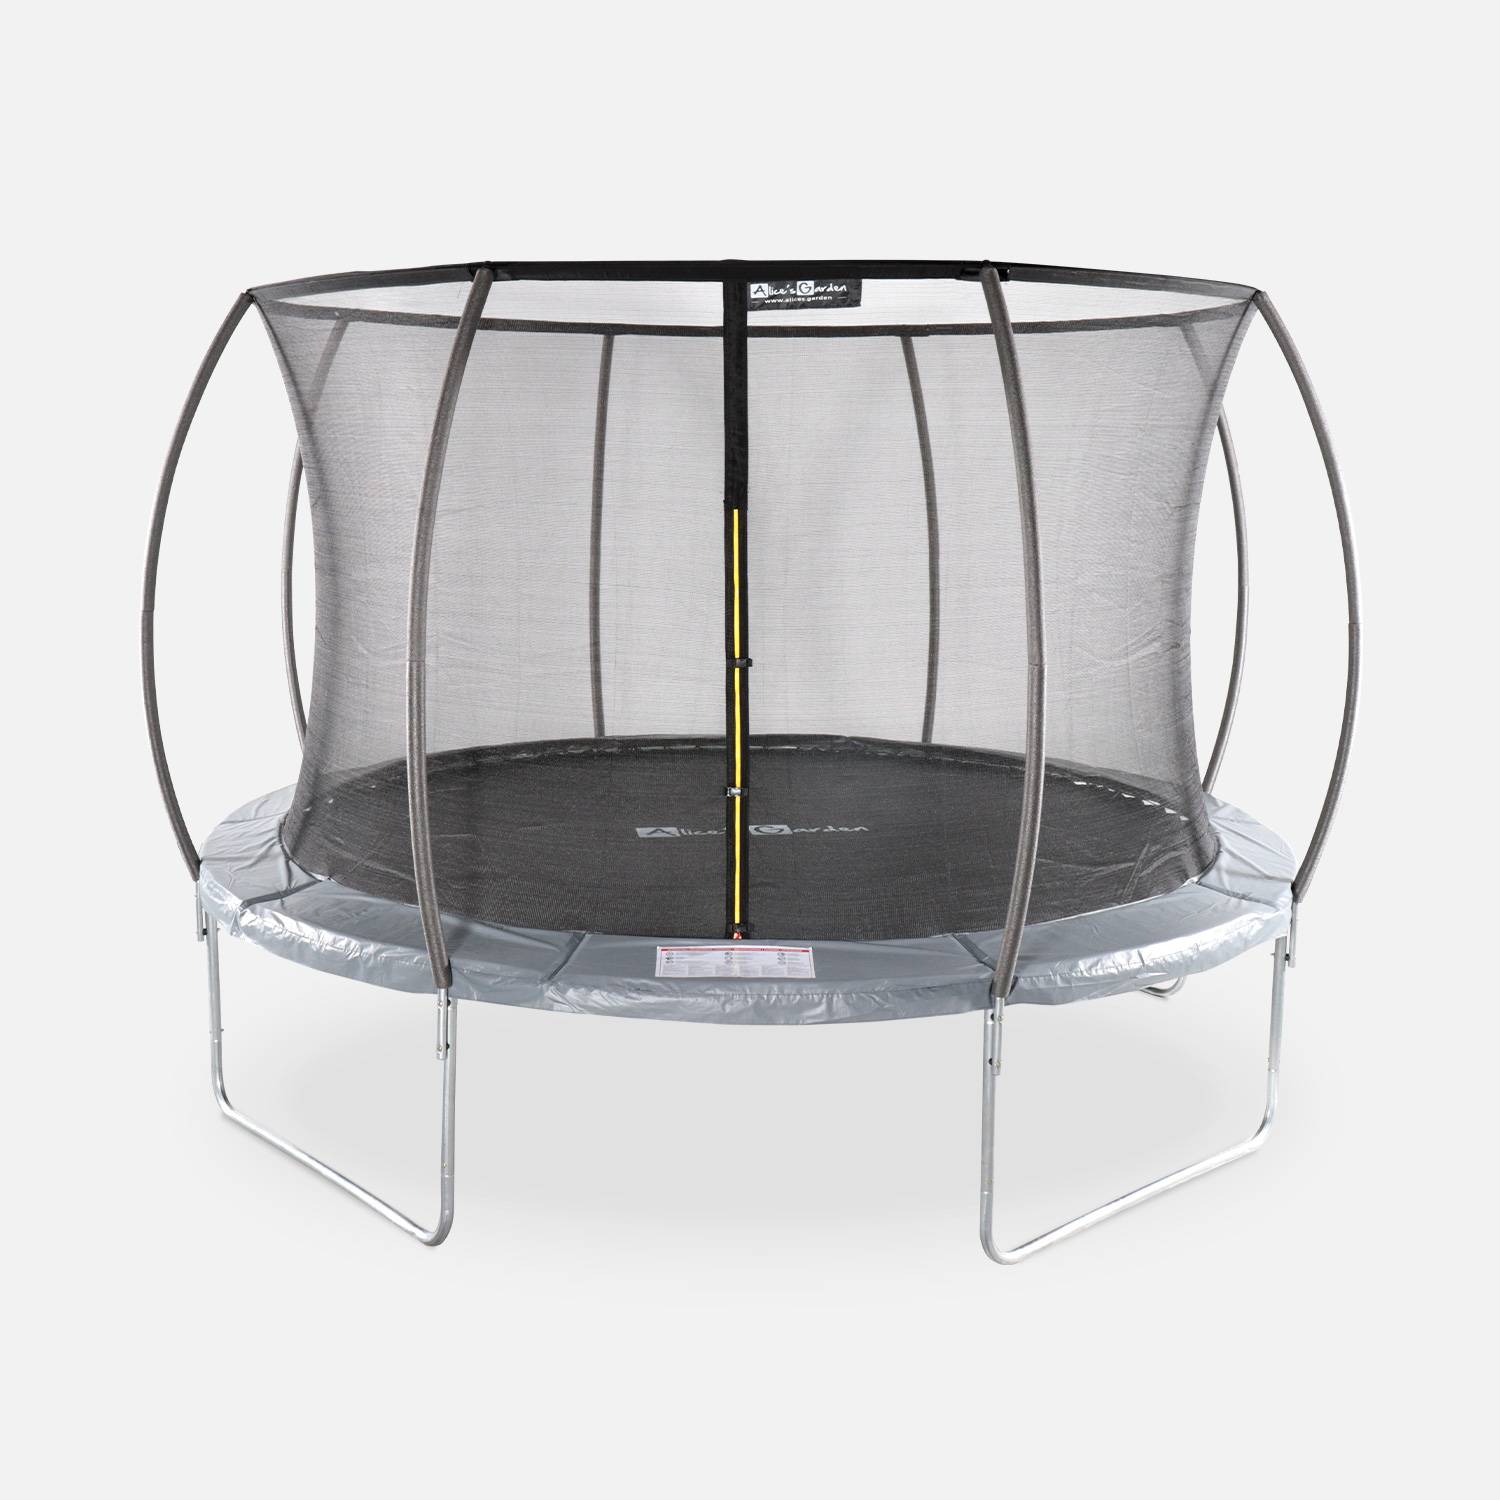 Trampoline rond Ø 370cm grijs met veiligheidsnet aan binnenzijde - Saturne Inner – Nieuw model - trampoline voor tuin 3,7m 370 cm |Kwaliteit PRO. | EU Normen. Photo1